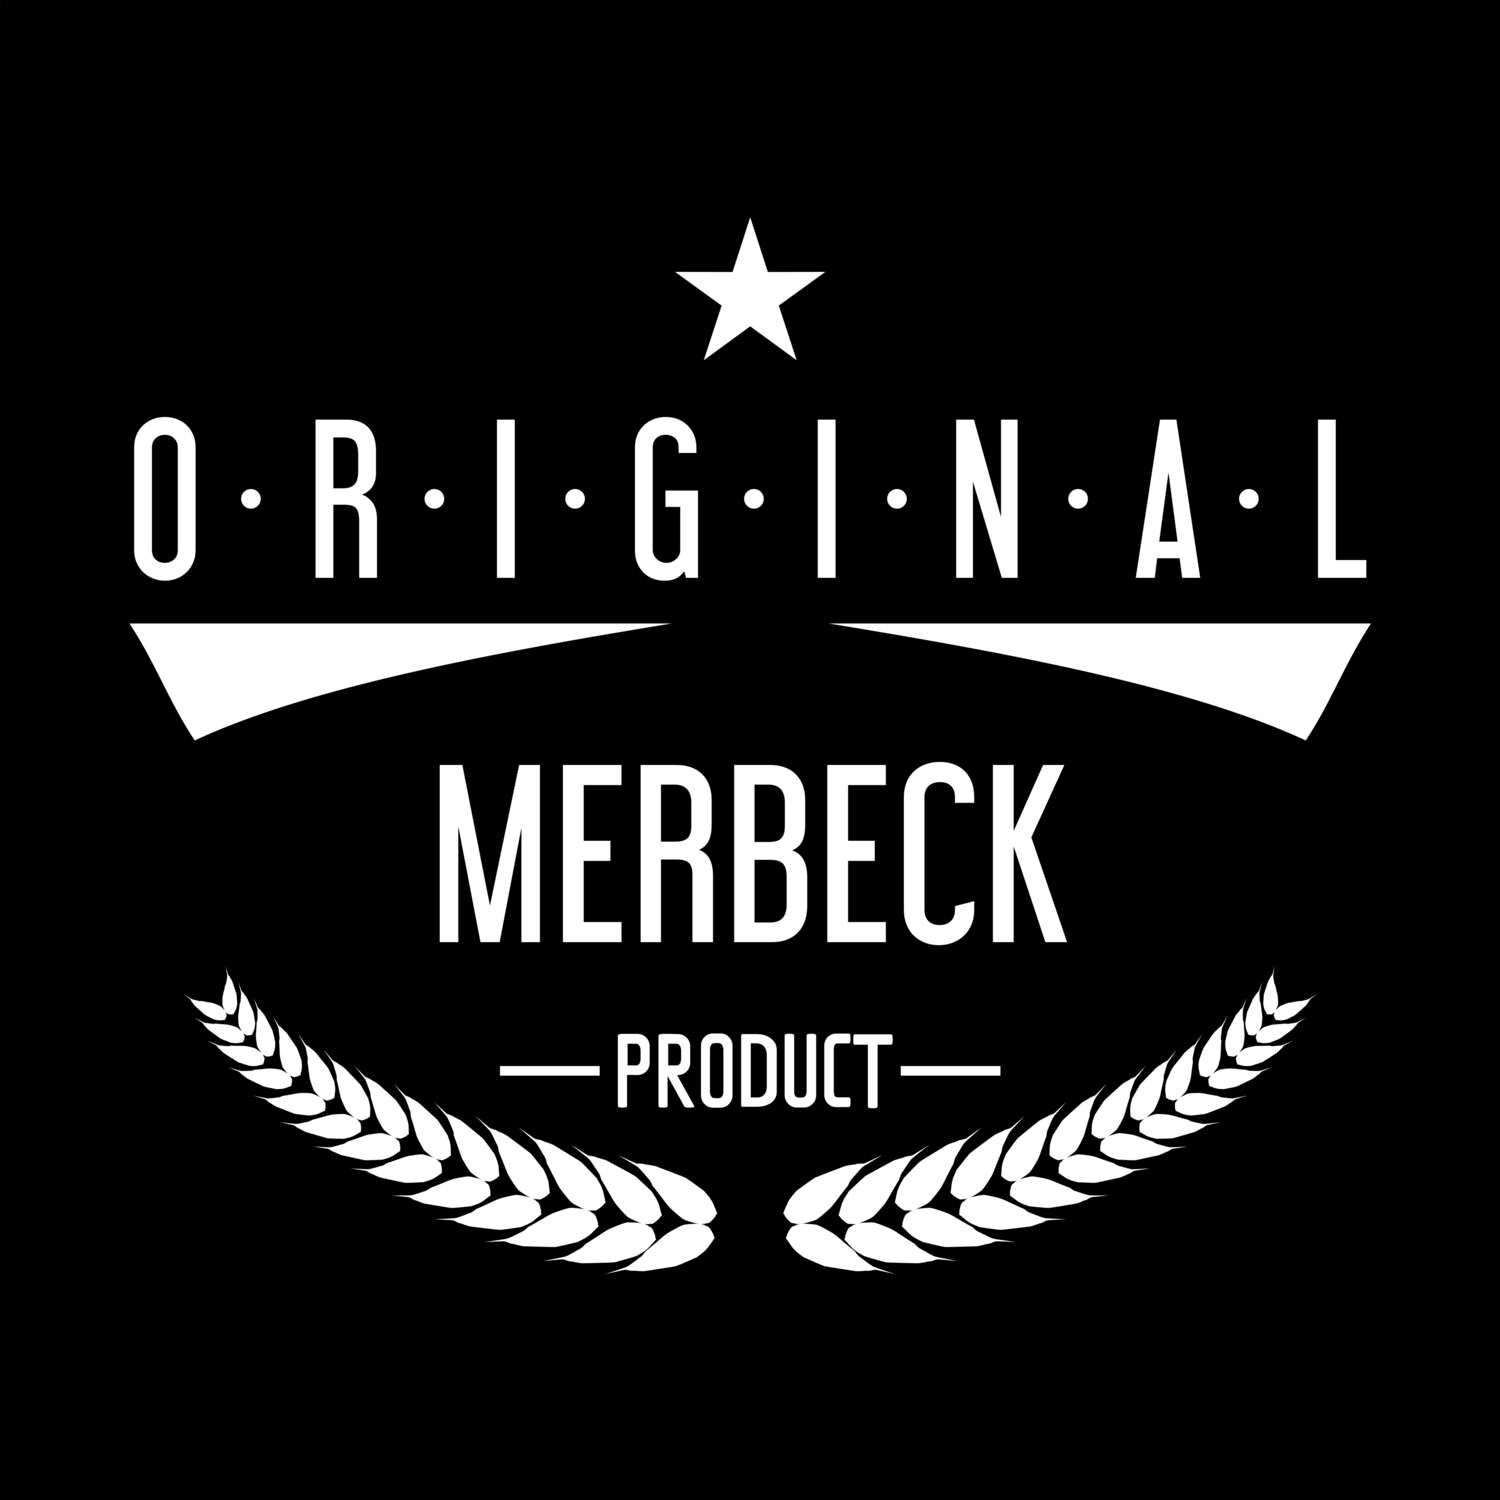 Merbeck T-Shirt »Original Product«